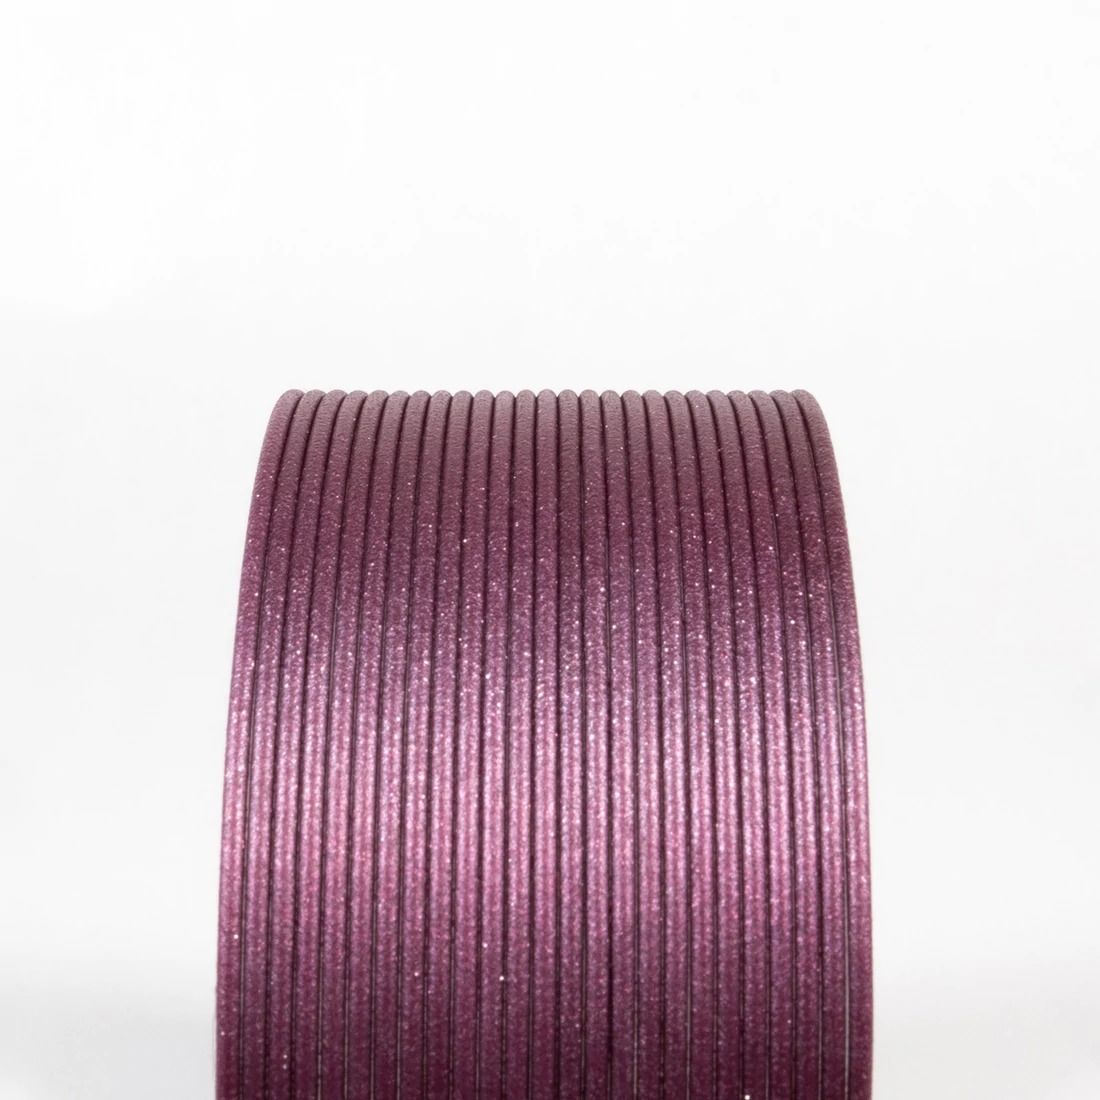 Luke's Proton Purple HTPLA 1.75mm 500gms 3D printing filament